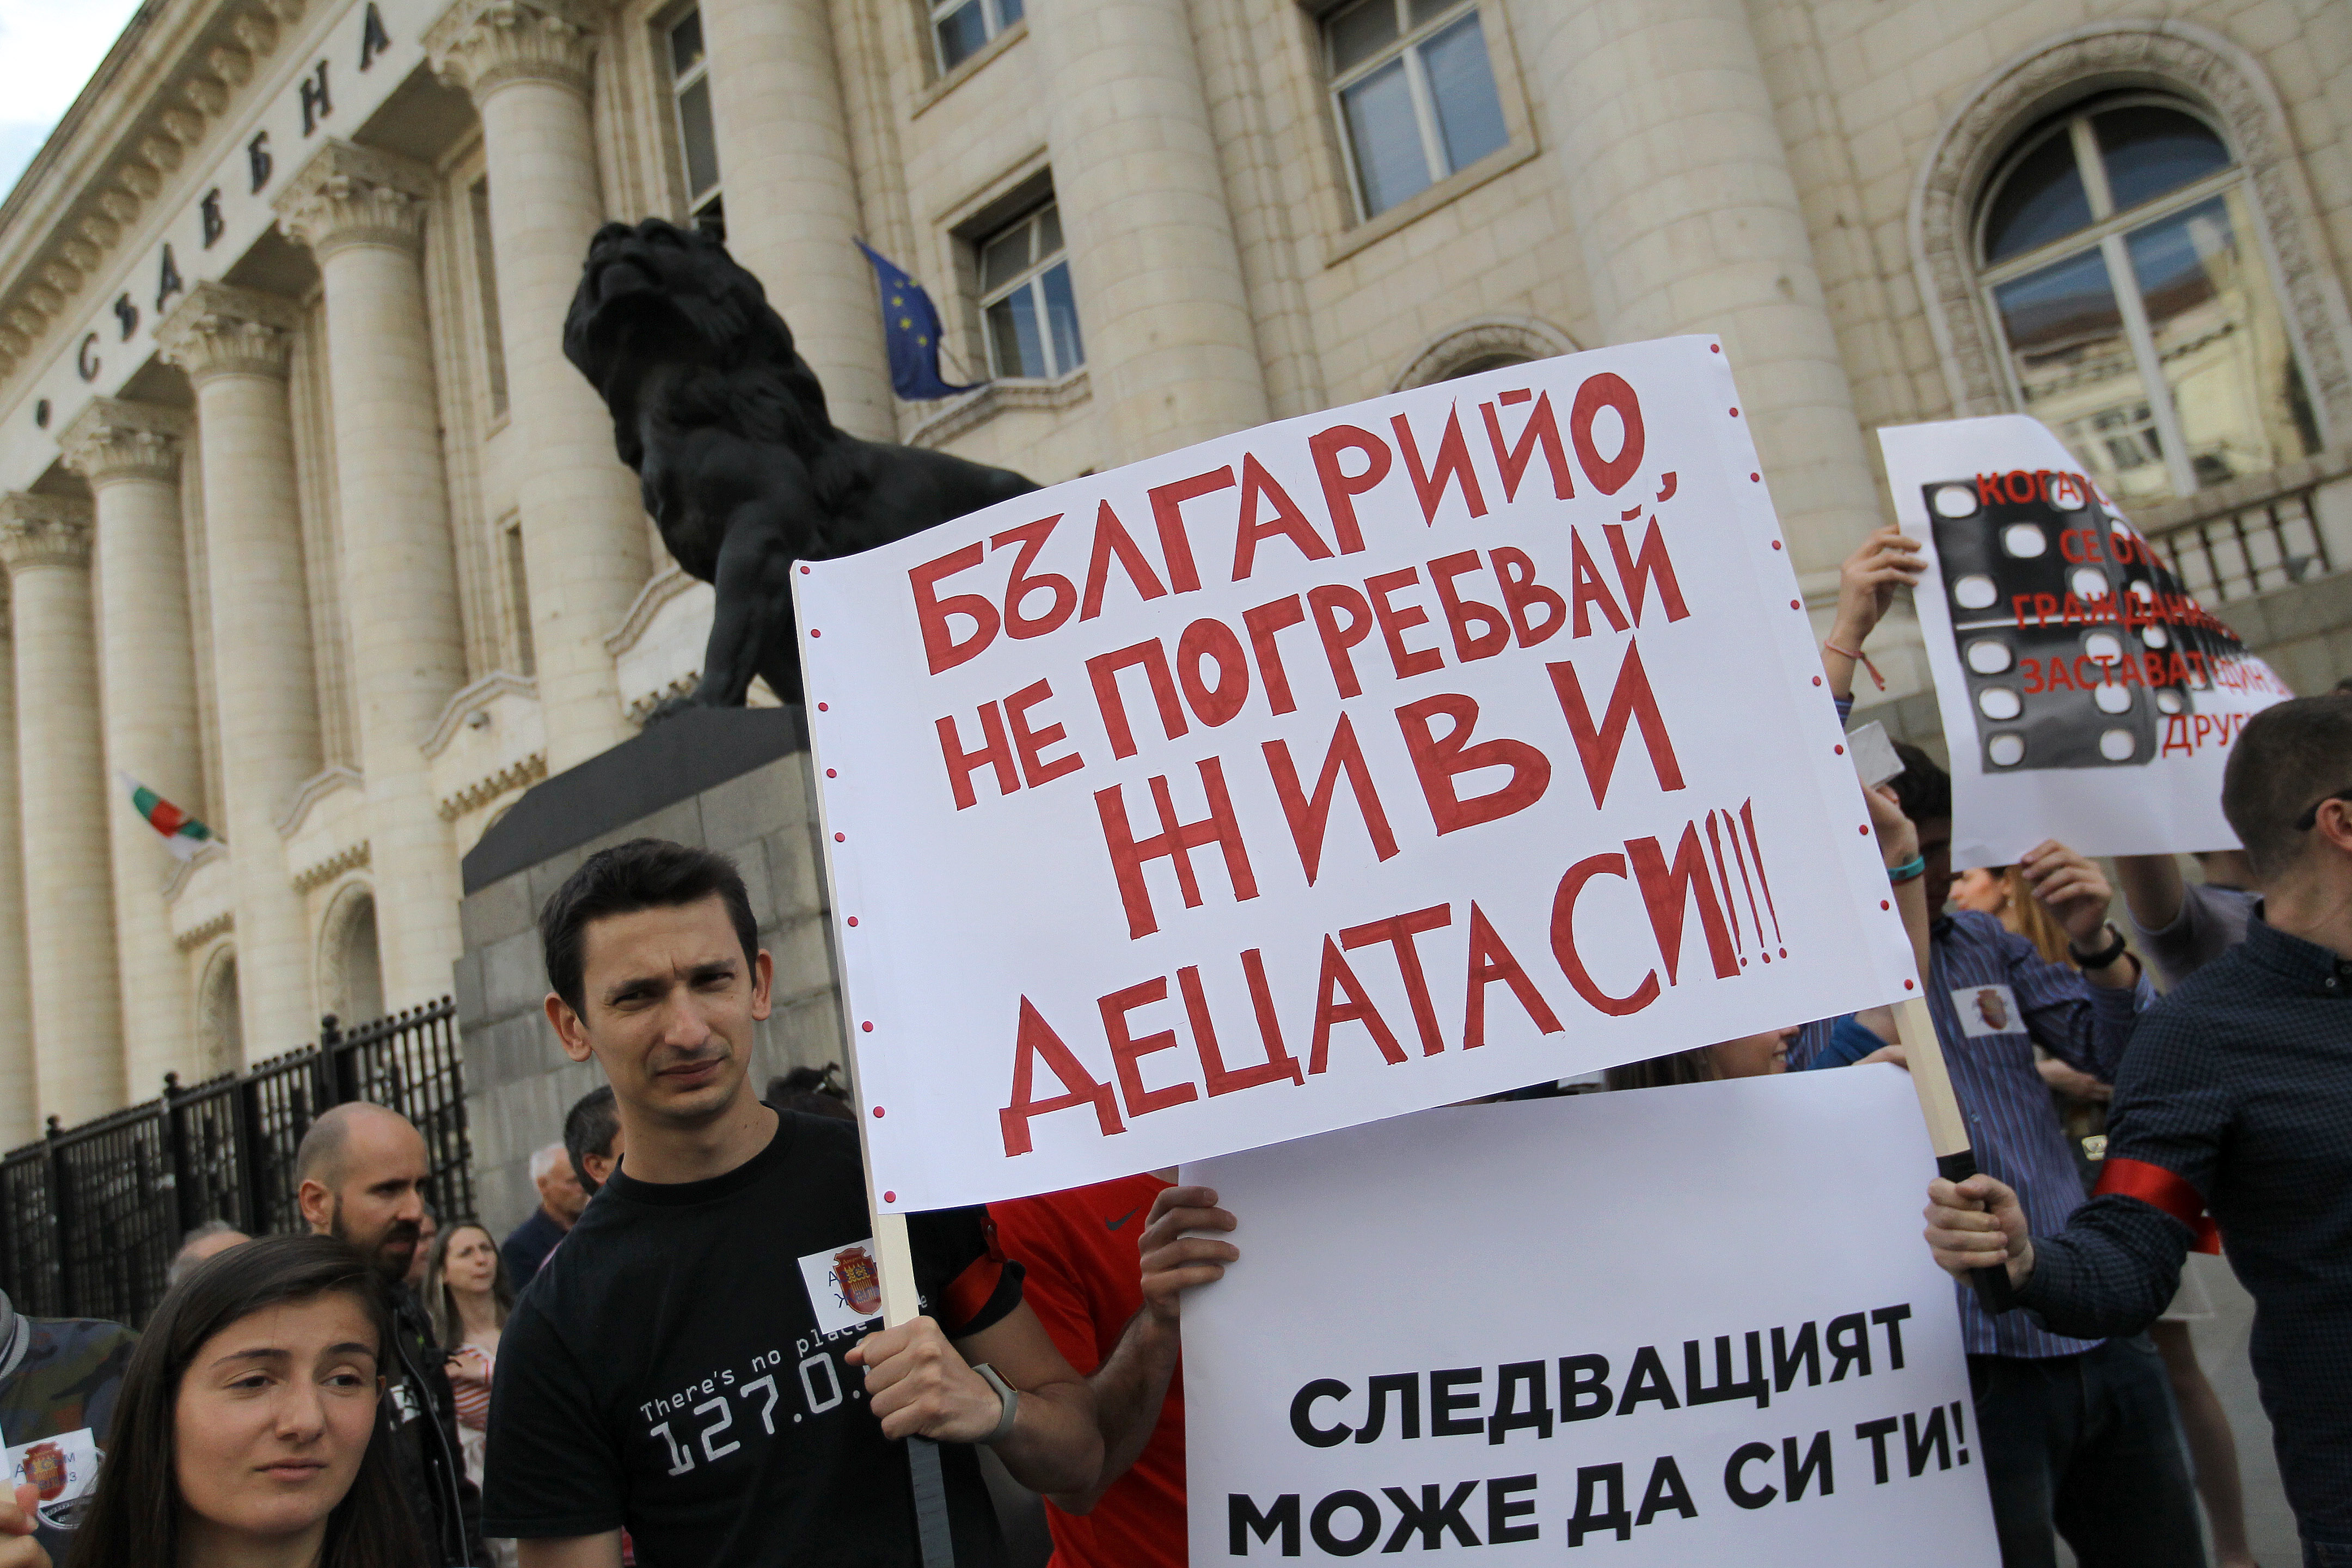 пред Съдебната палата в столицата започна протест под надслов ”Да спрем екстрадицията на Желяз Андреев”